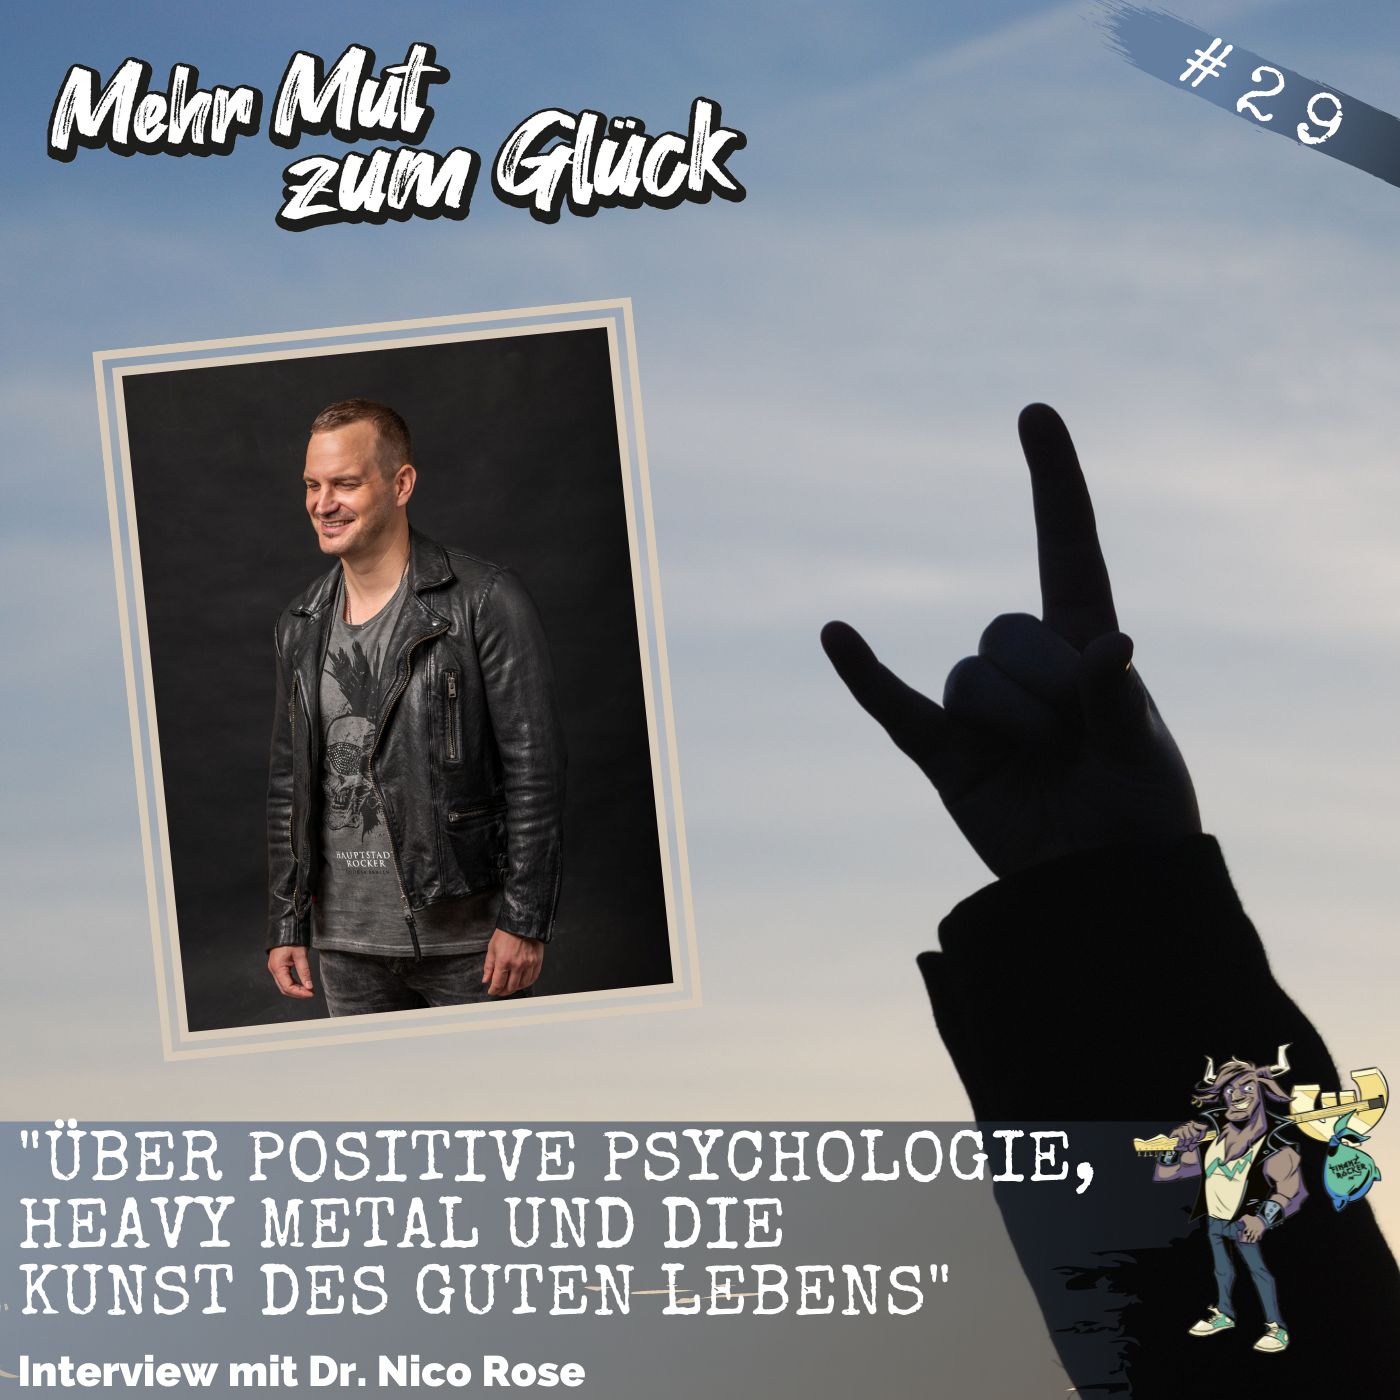 Folge 29: ”Über Positive Psychologie, Heavy Metal und die Kunst des guten Lebens” - Interview mit Dr. Nico Rose